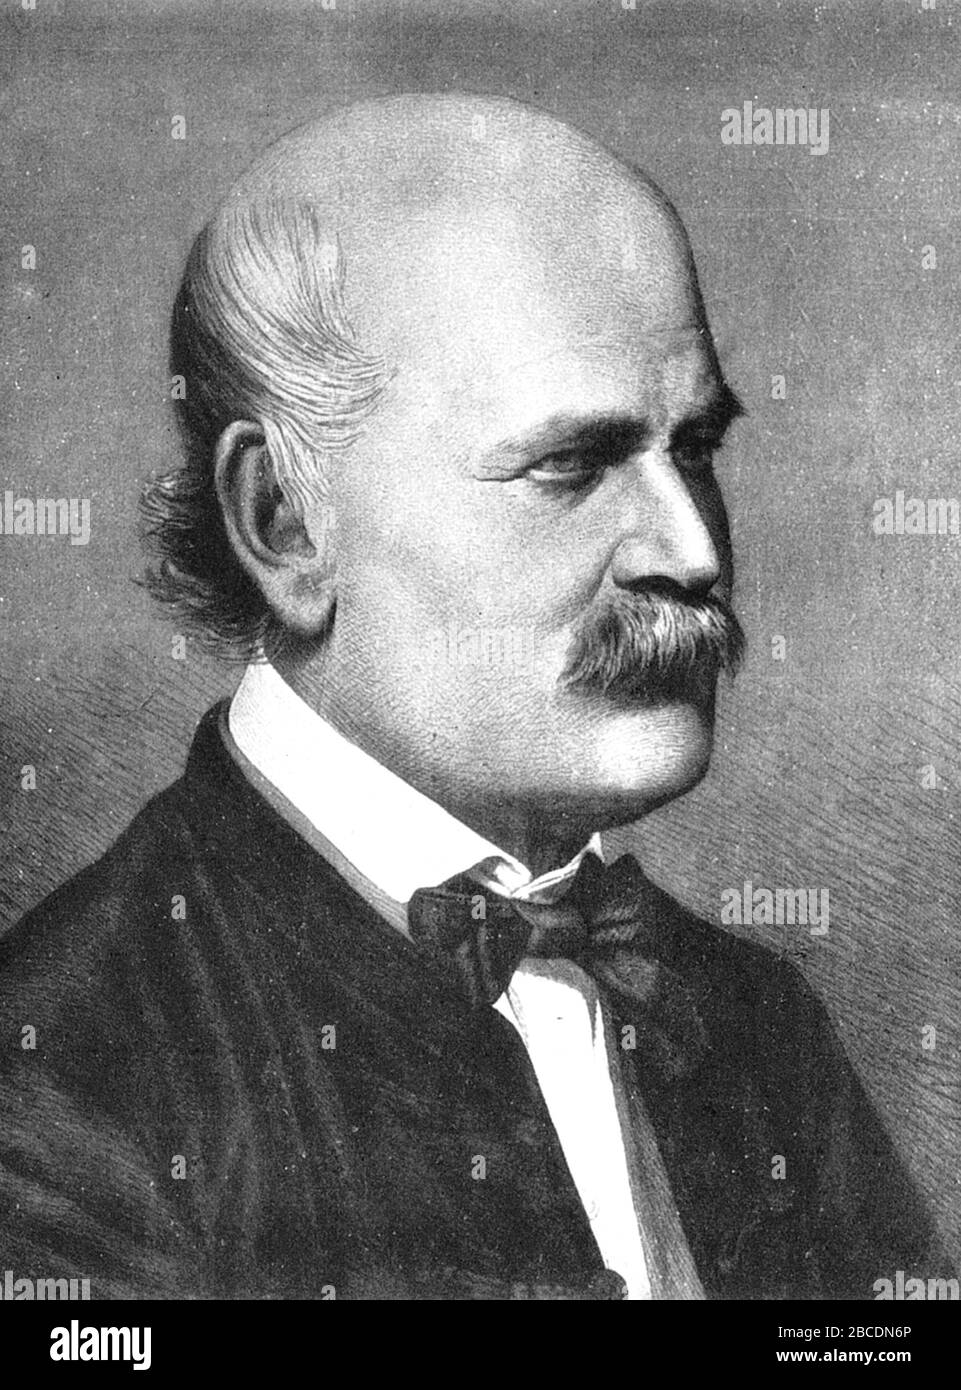 Ignaz Semmelweis, Ignaz Philipp Semmelweis (1818 – 1865) médico y científico húngaro, ahora conocido como pionero de los procedimientos antisépticos Foto de stock